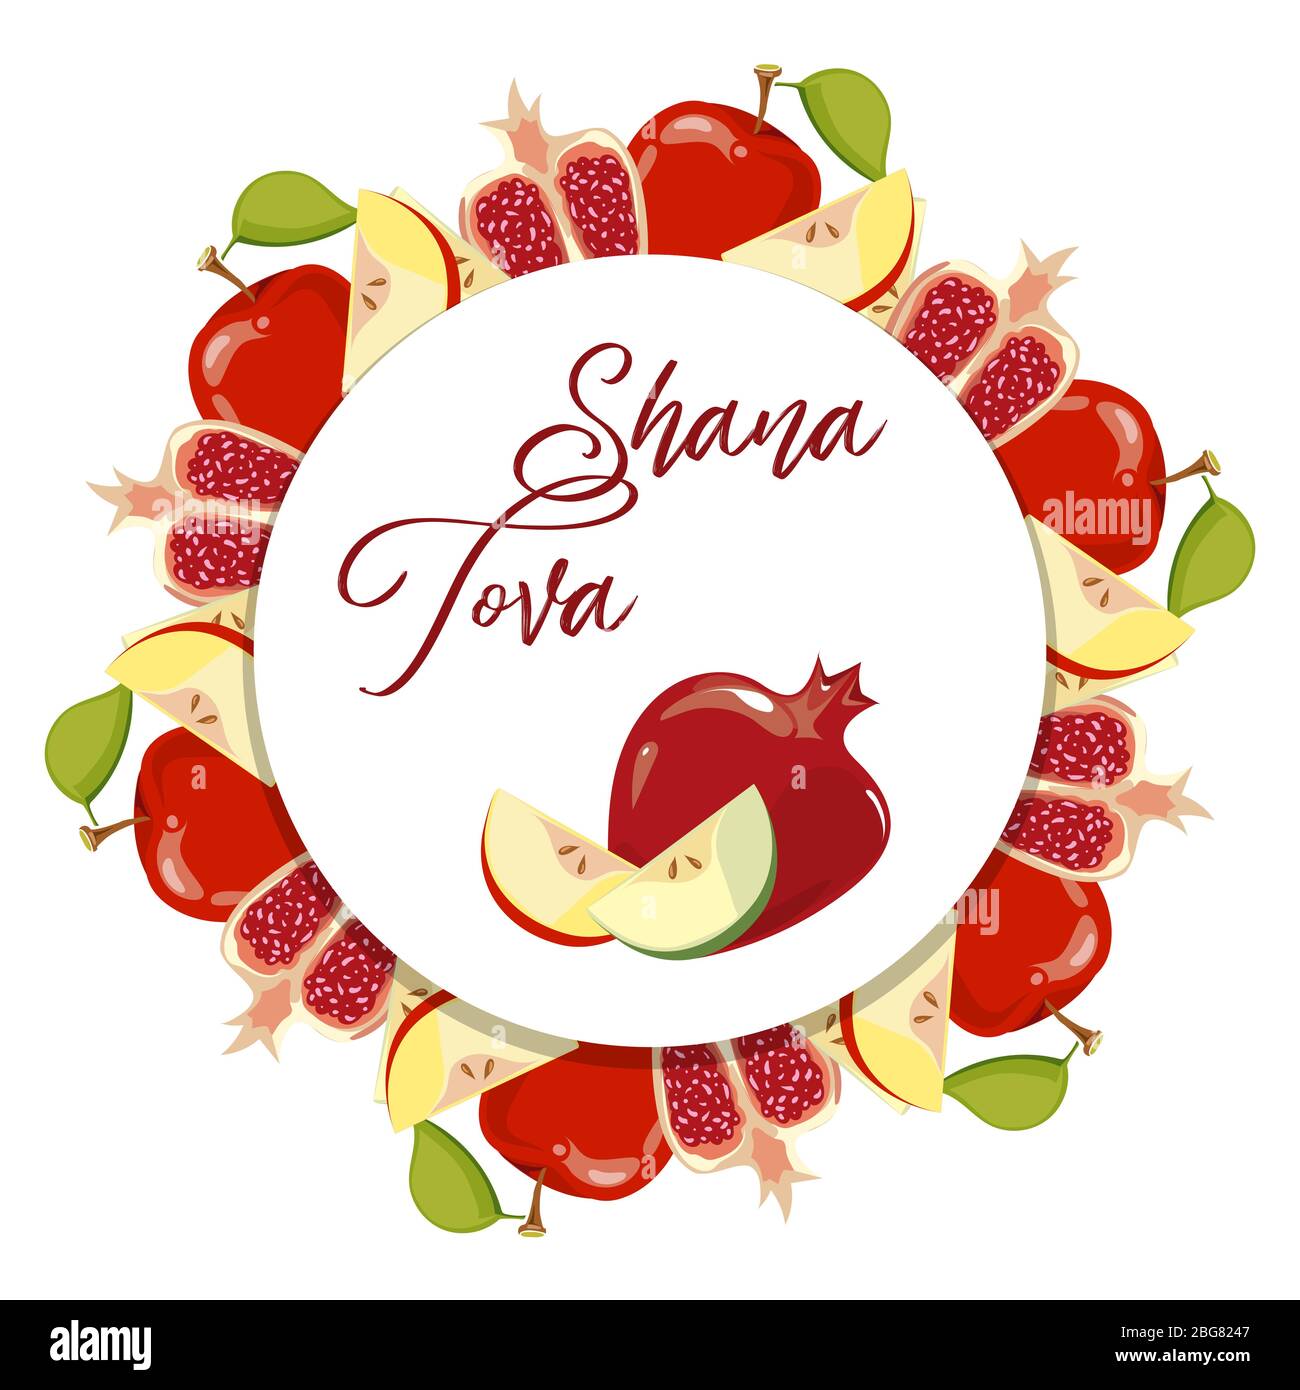 Shana Tova Jüdisches Neujahr Vektor-Banner mit Früchten isoliert auf weißer Illustration Stock Vektor